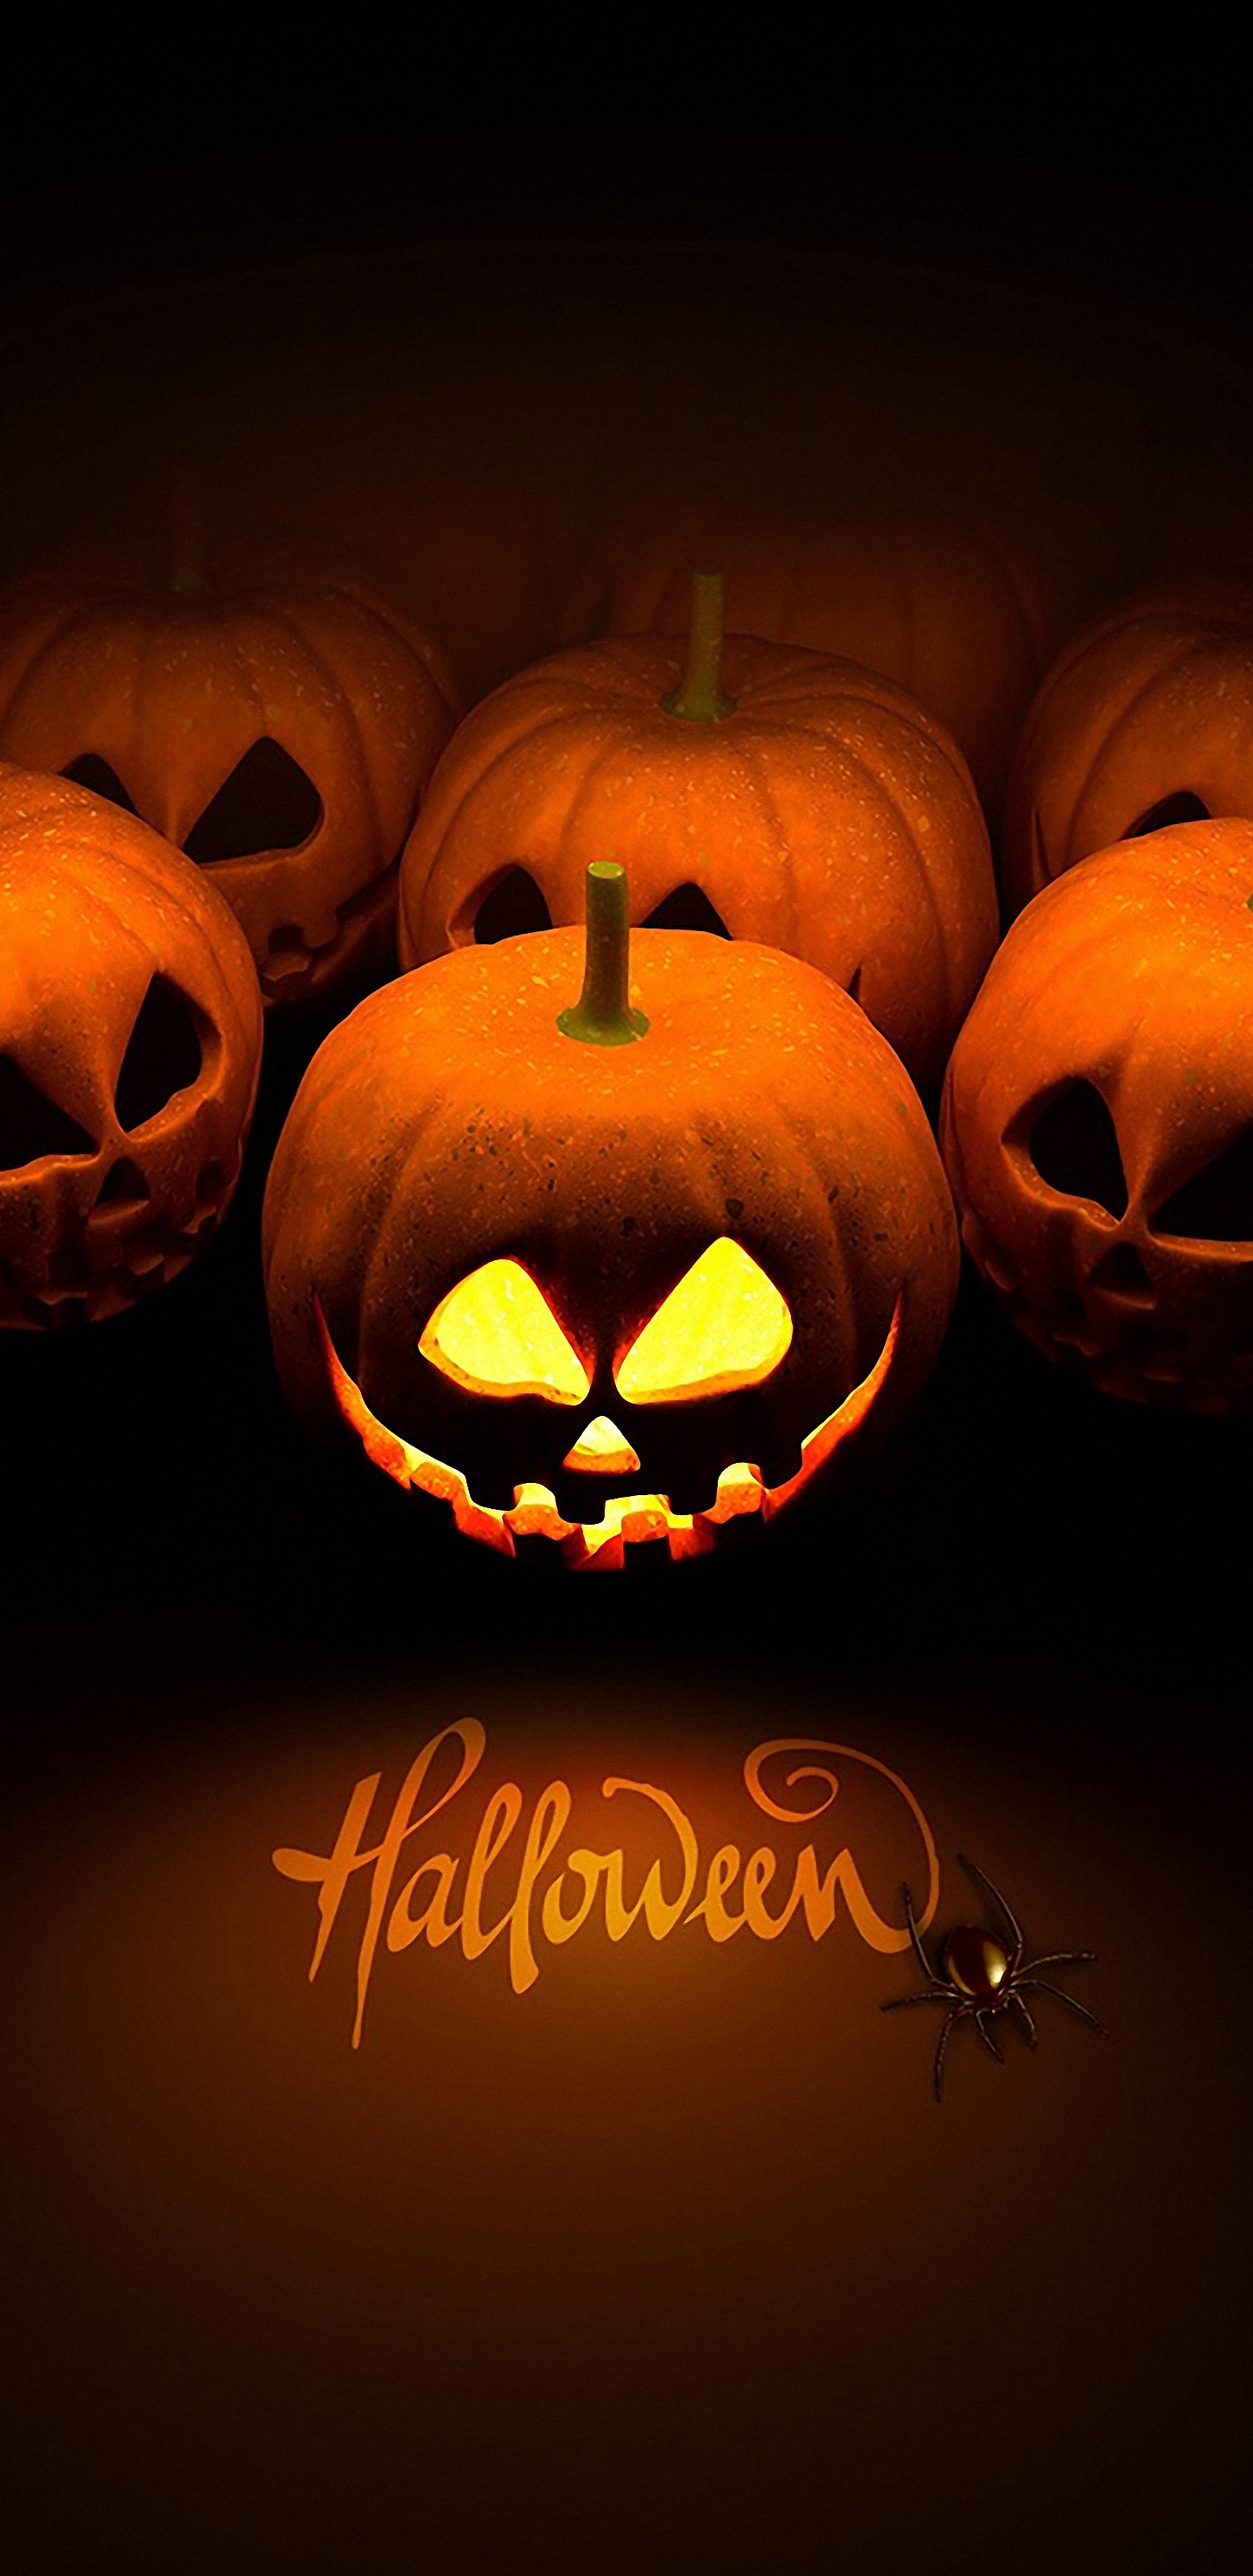 HD Halloween Pumpkin Galaxy S8 Wallpaper